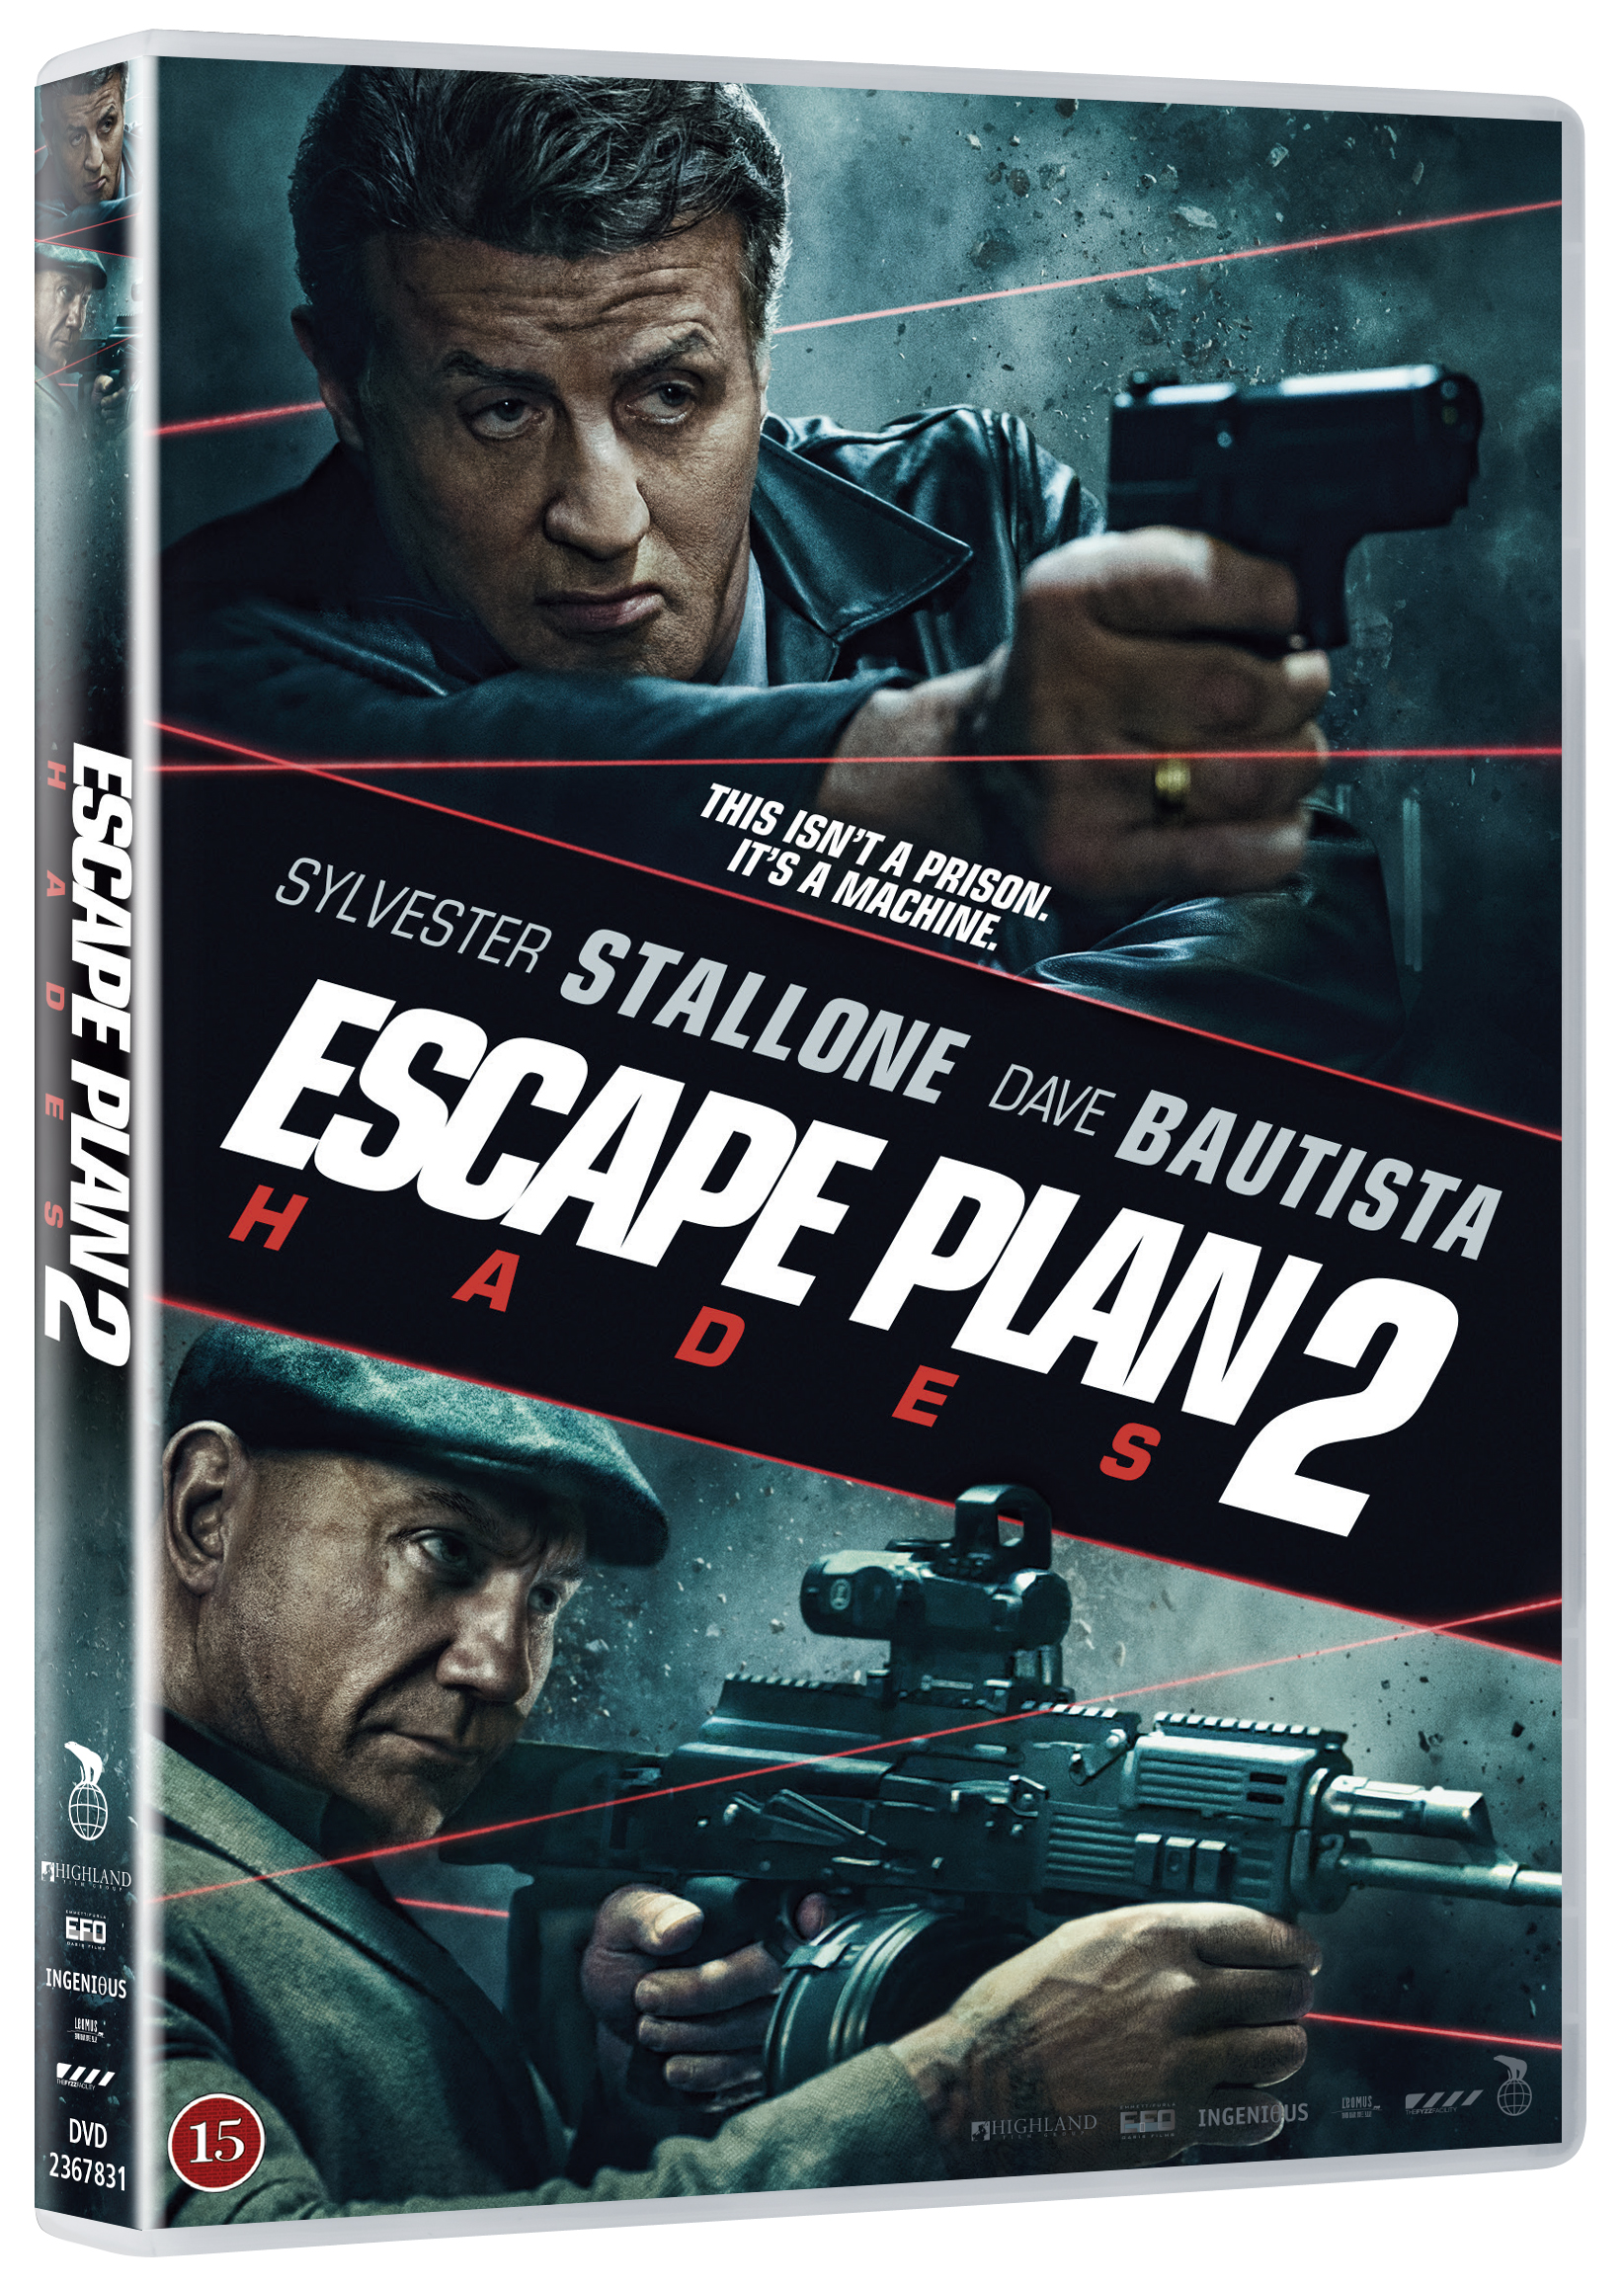 escape plan 2 online